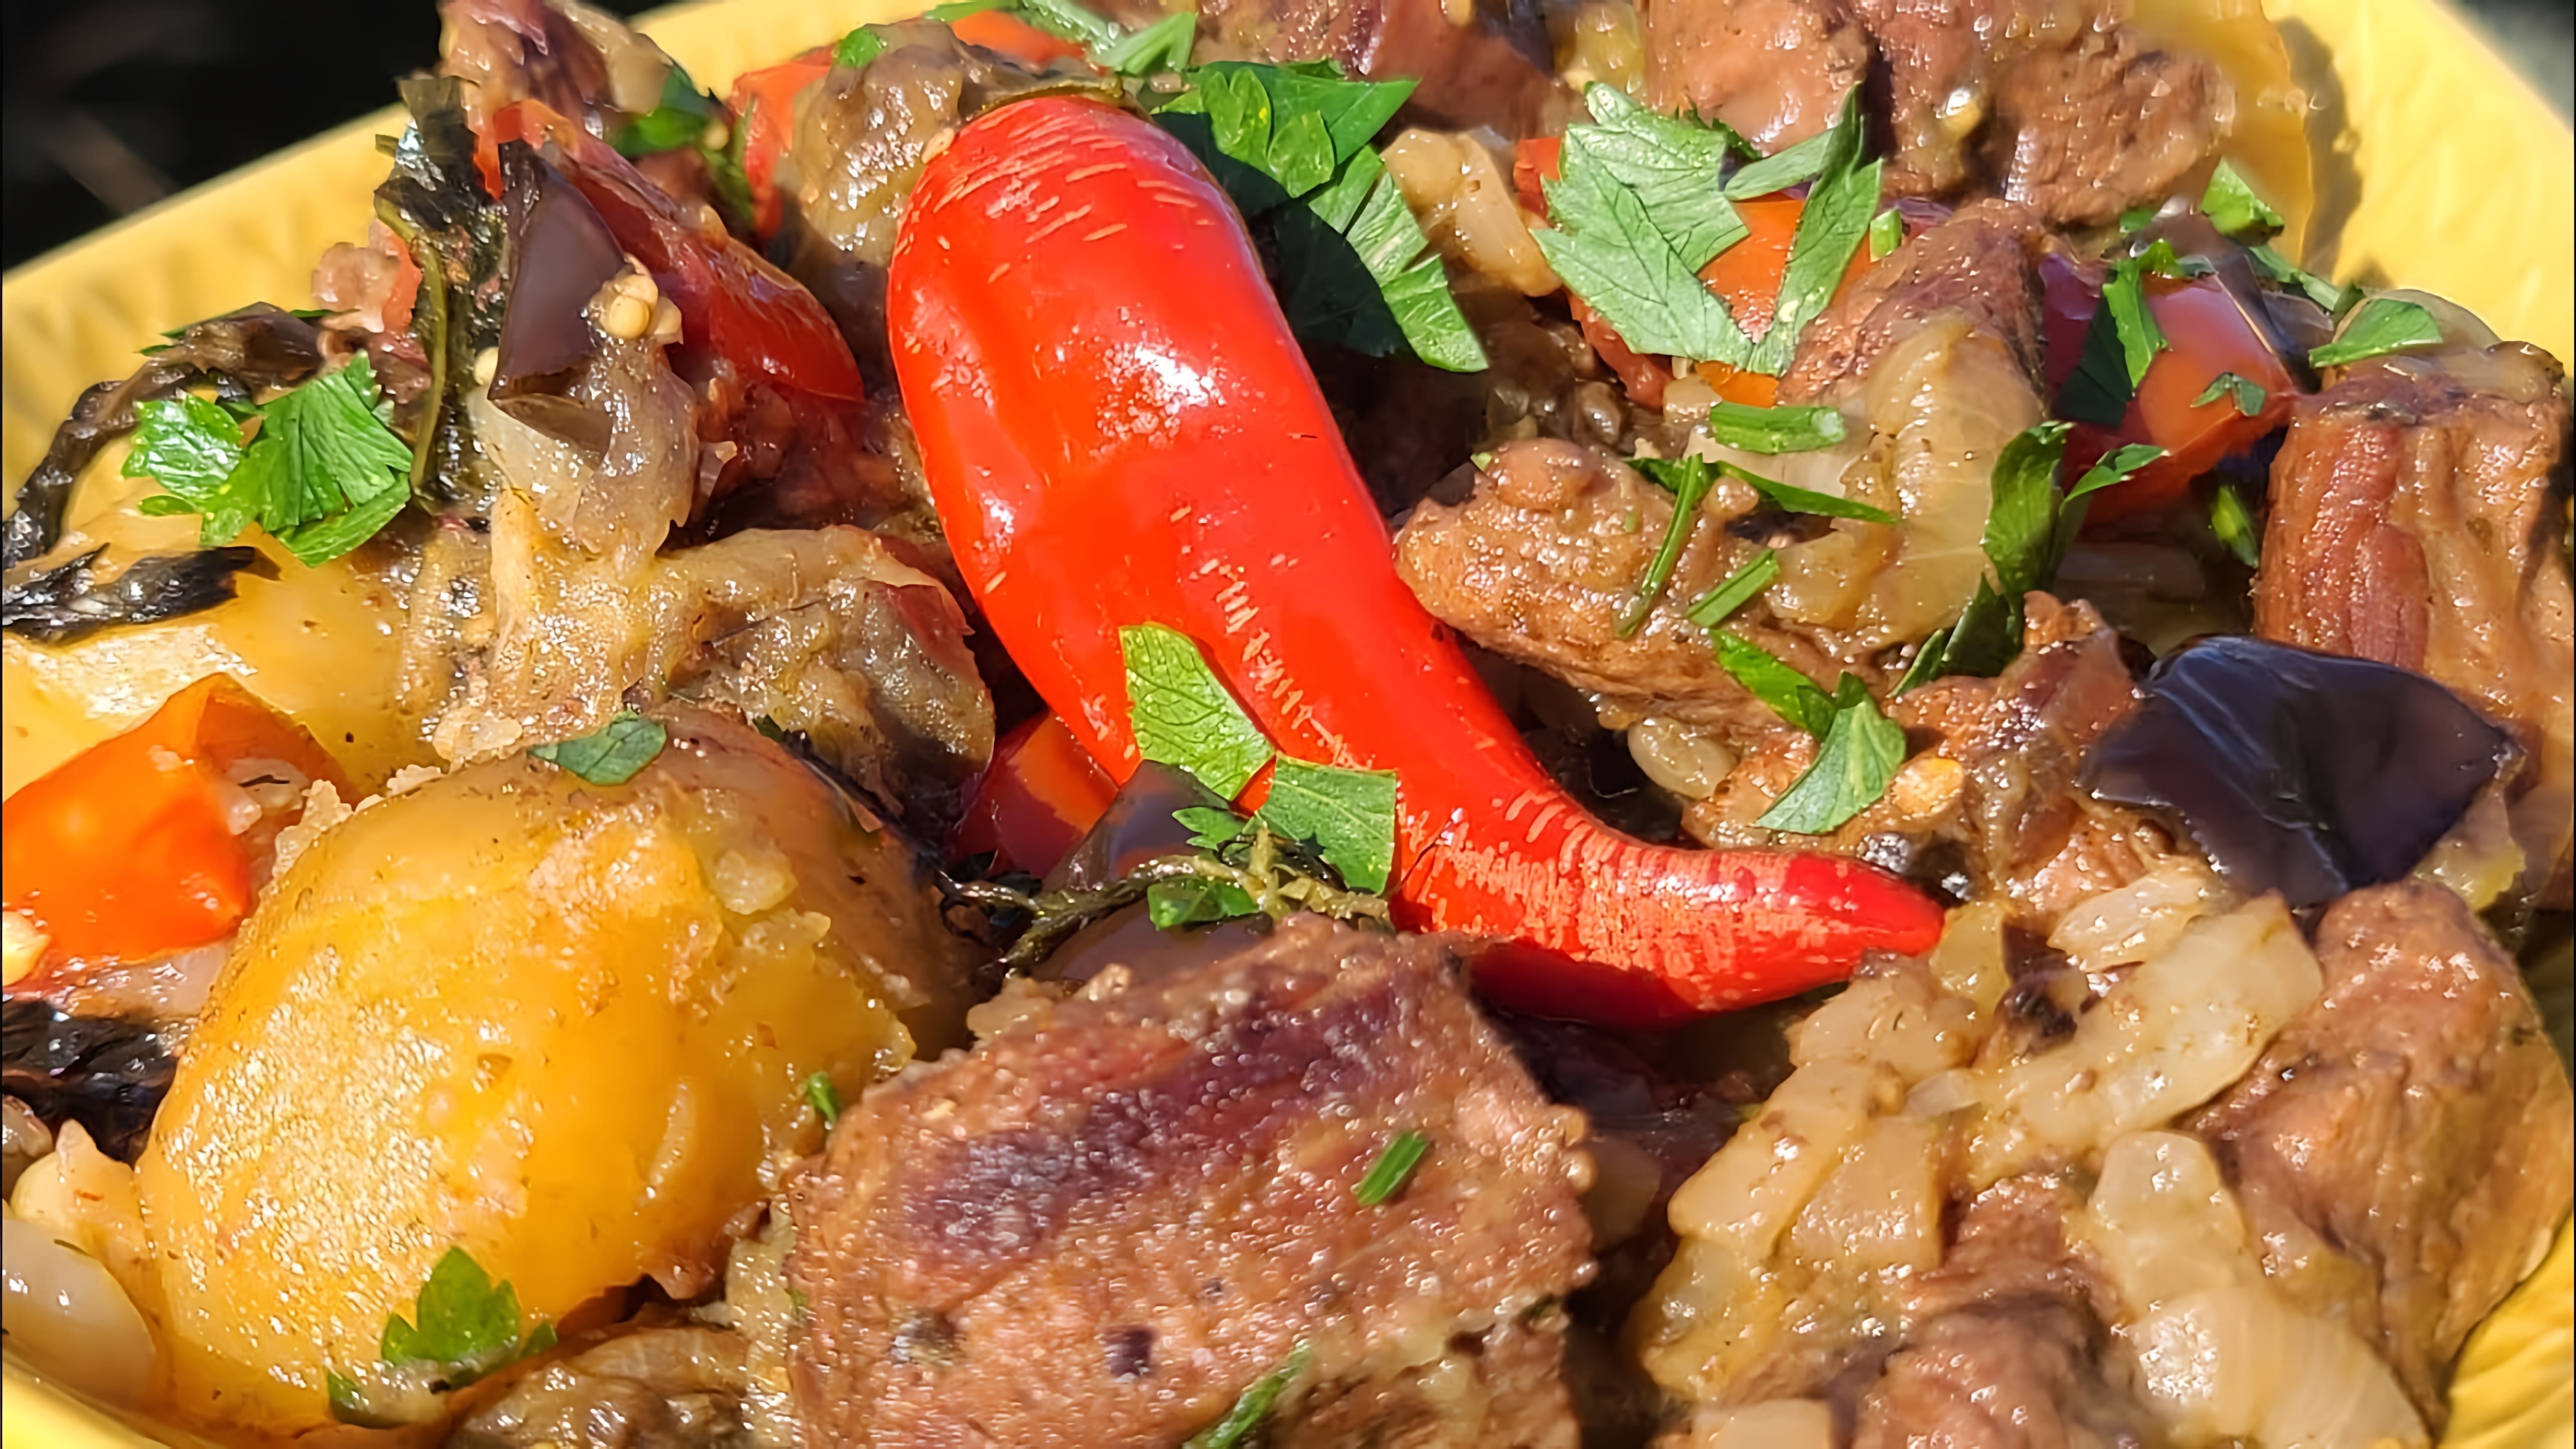 В этом видео демонстрируется процесс приготовления чанахи - грузинского блюда из овощей и мяса